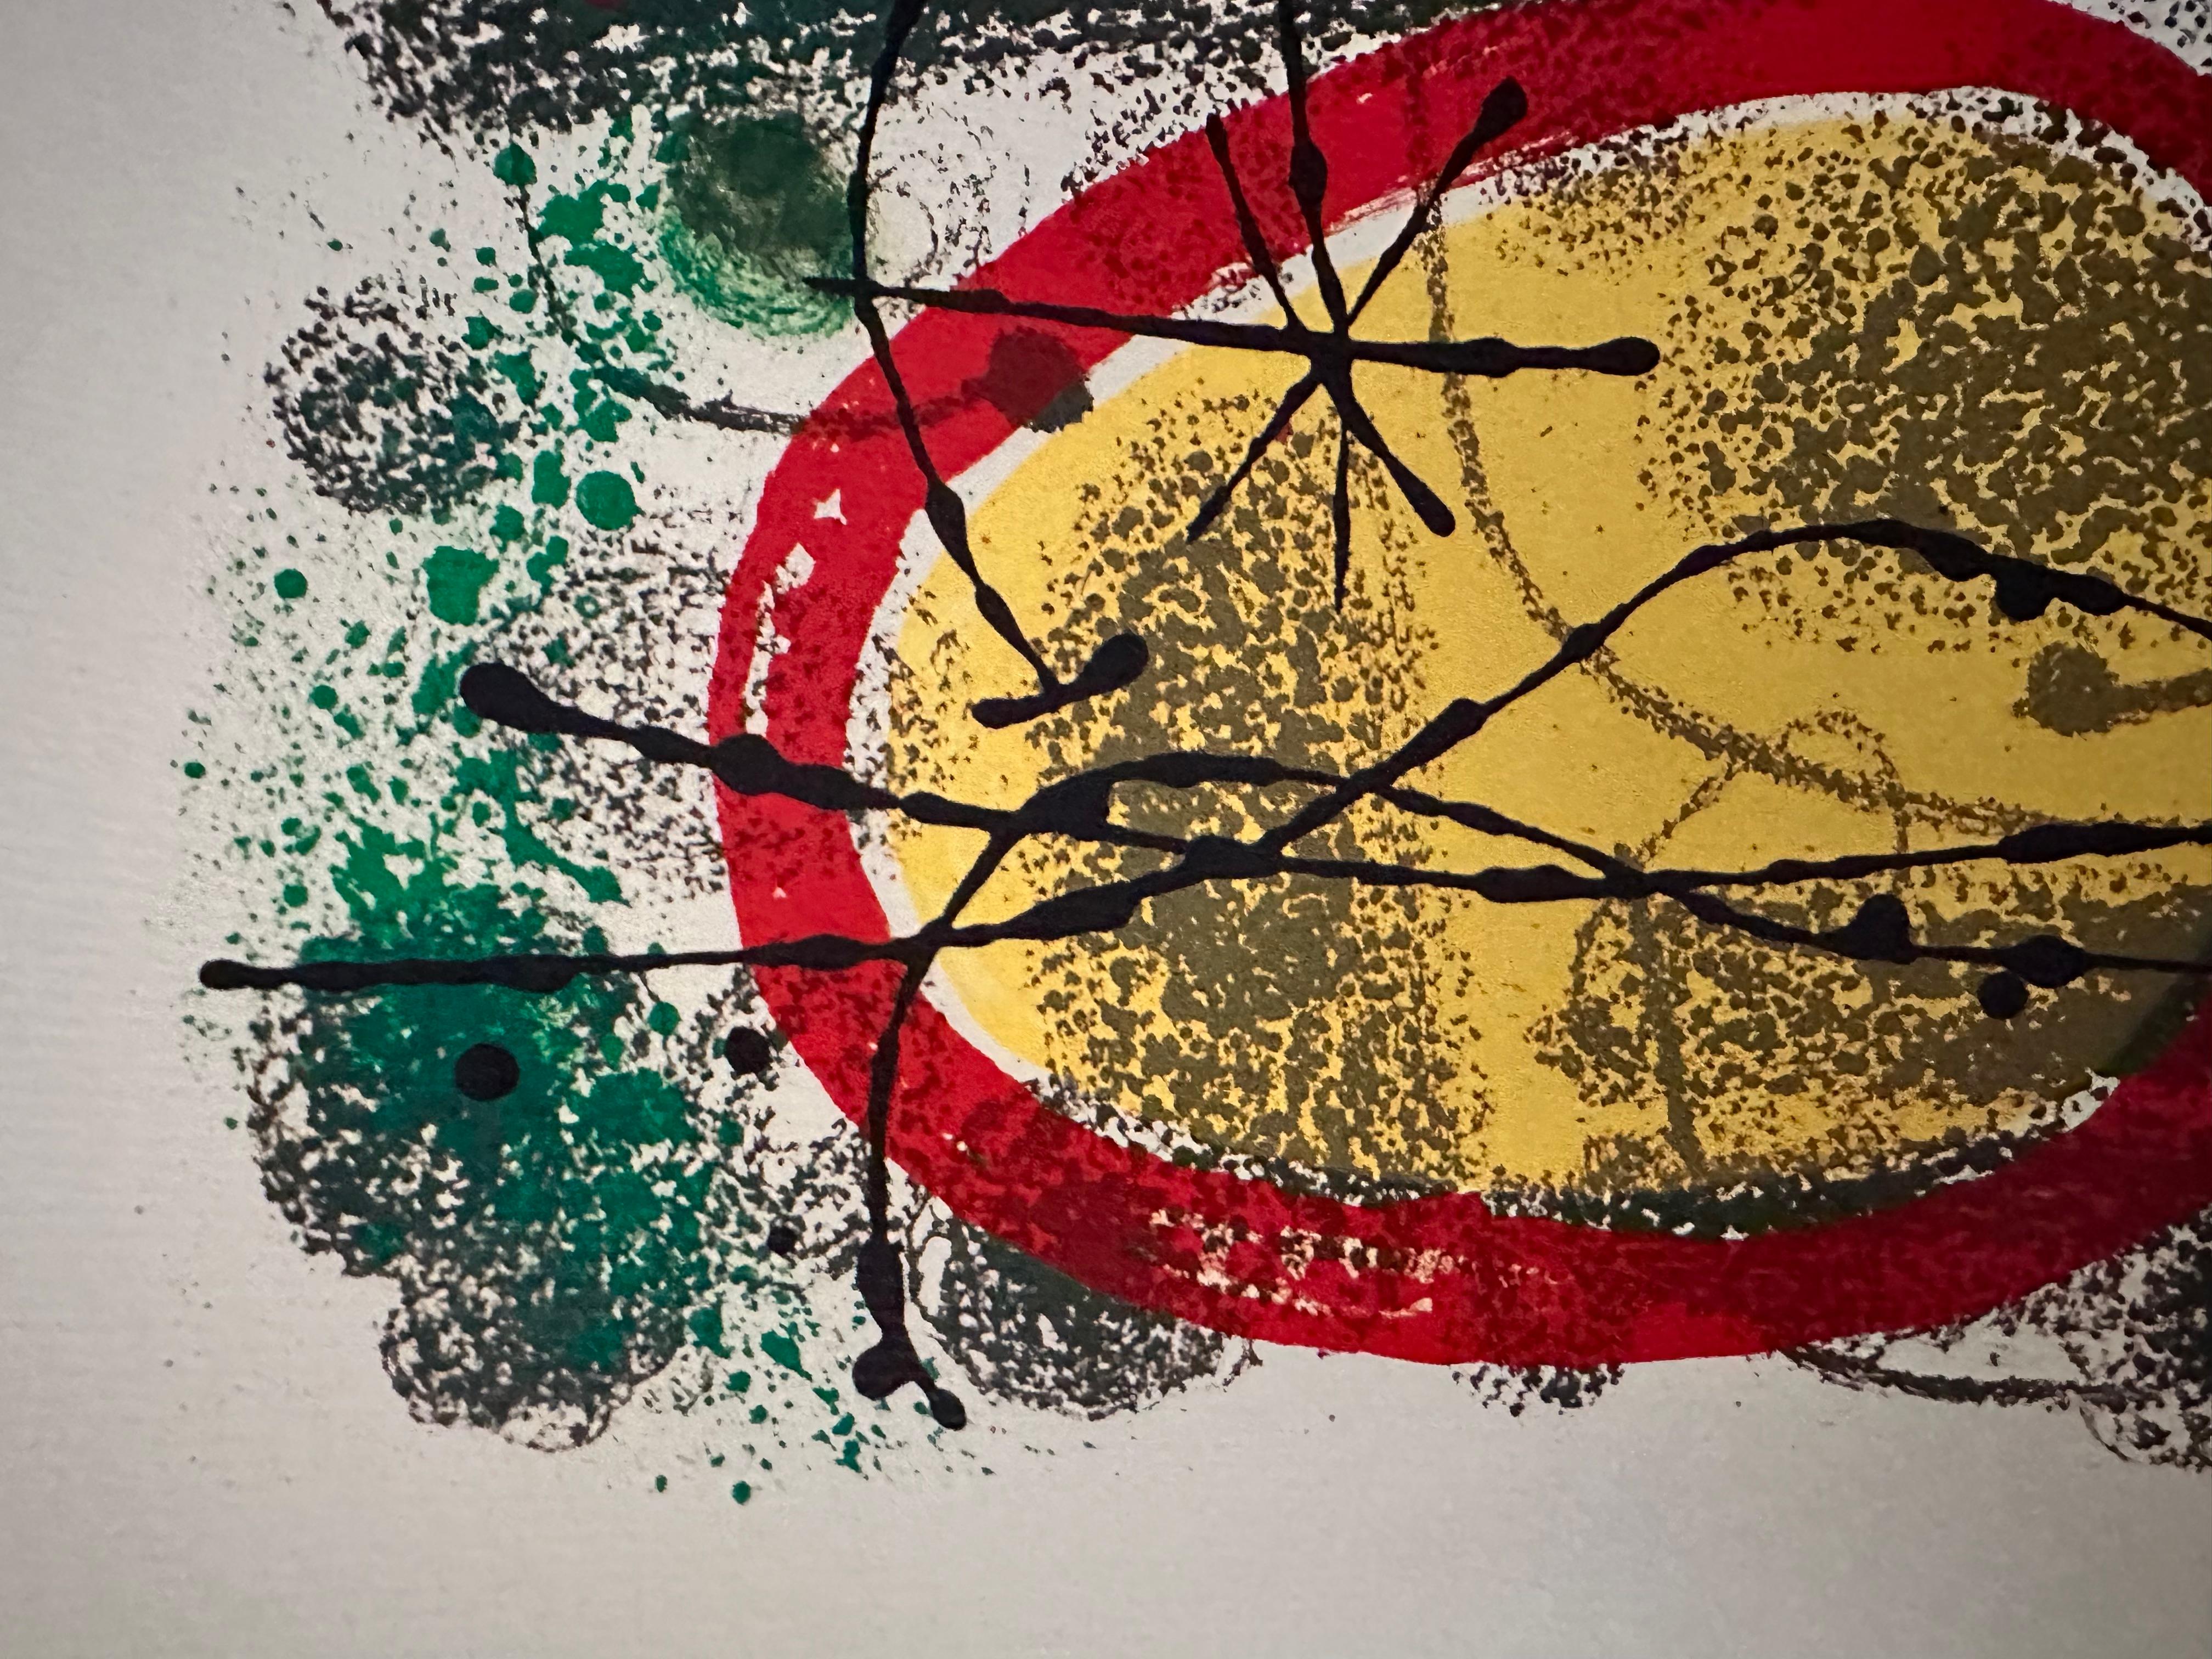 Cartones Plate 1 - Print by Joan Miró